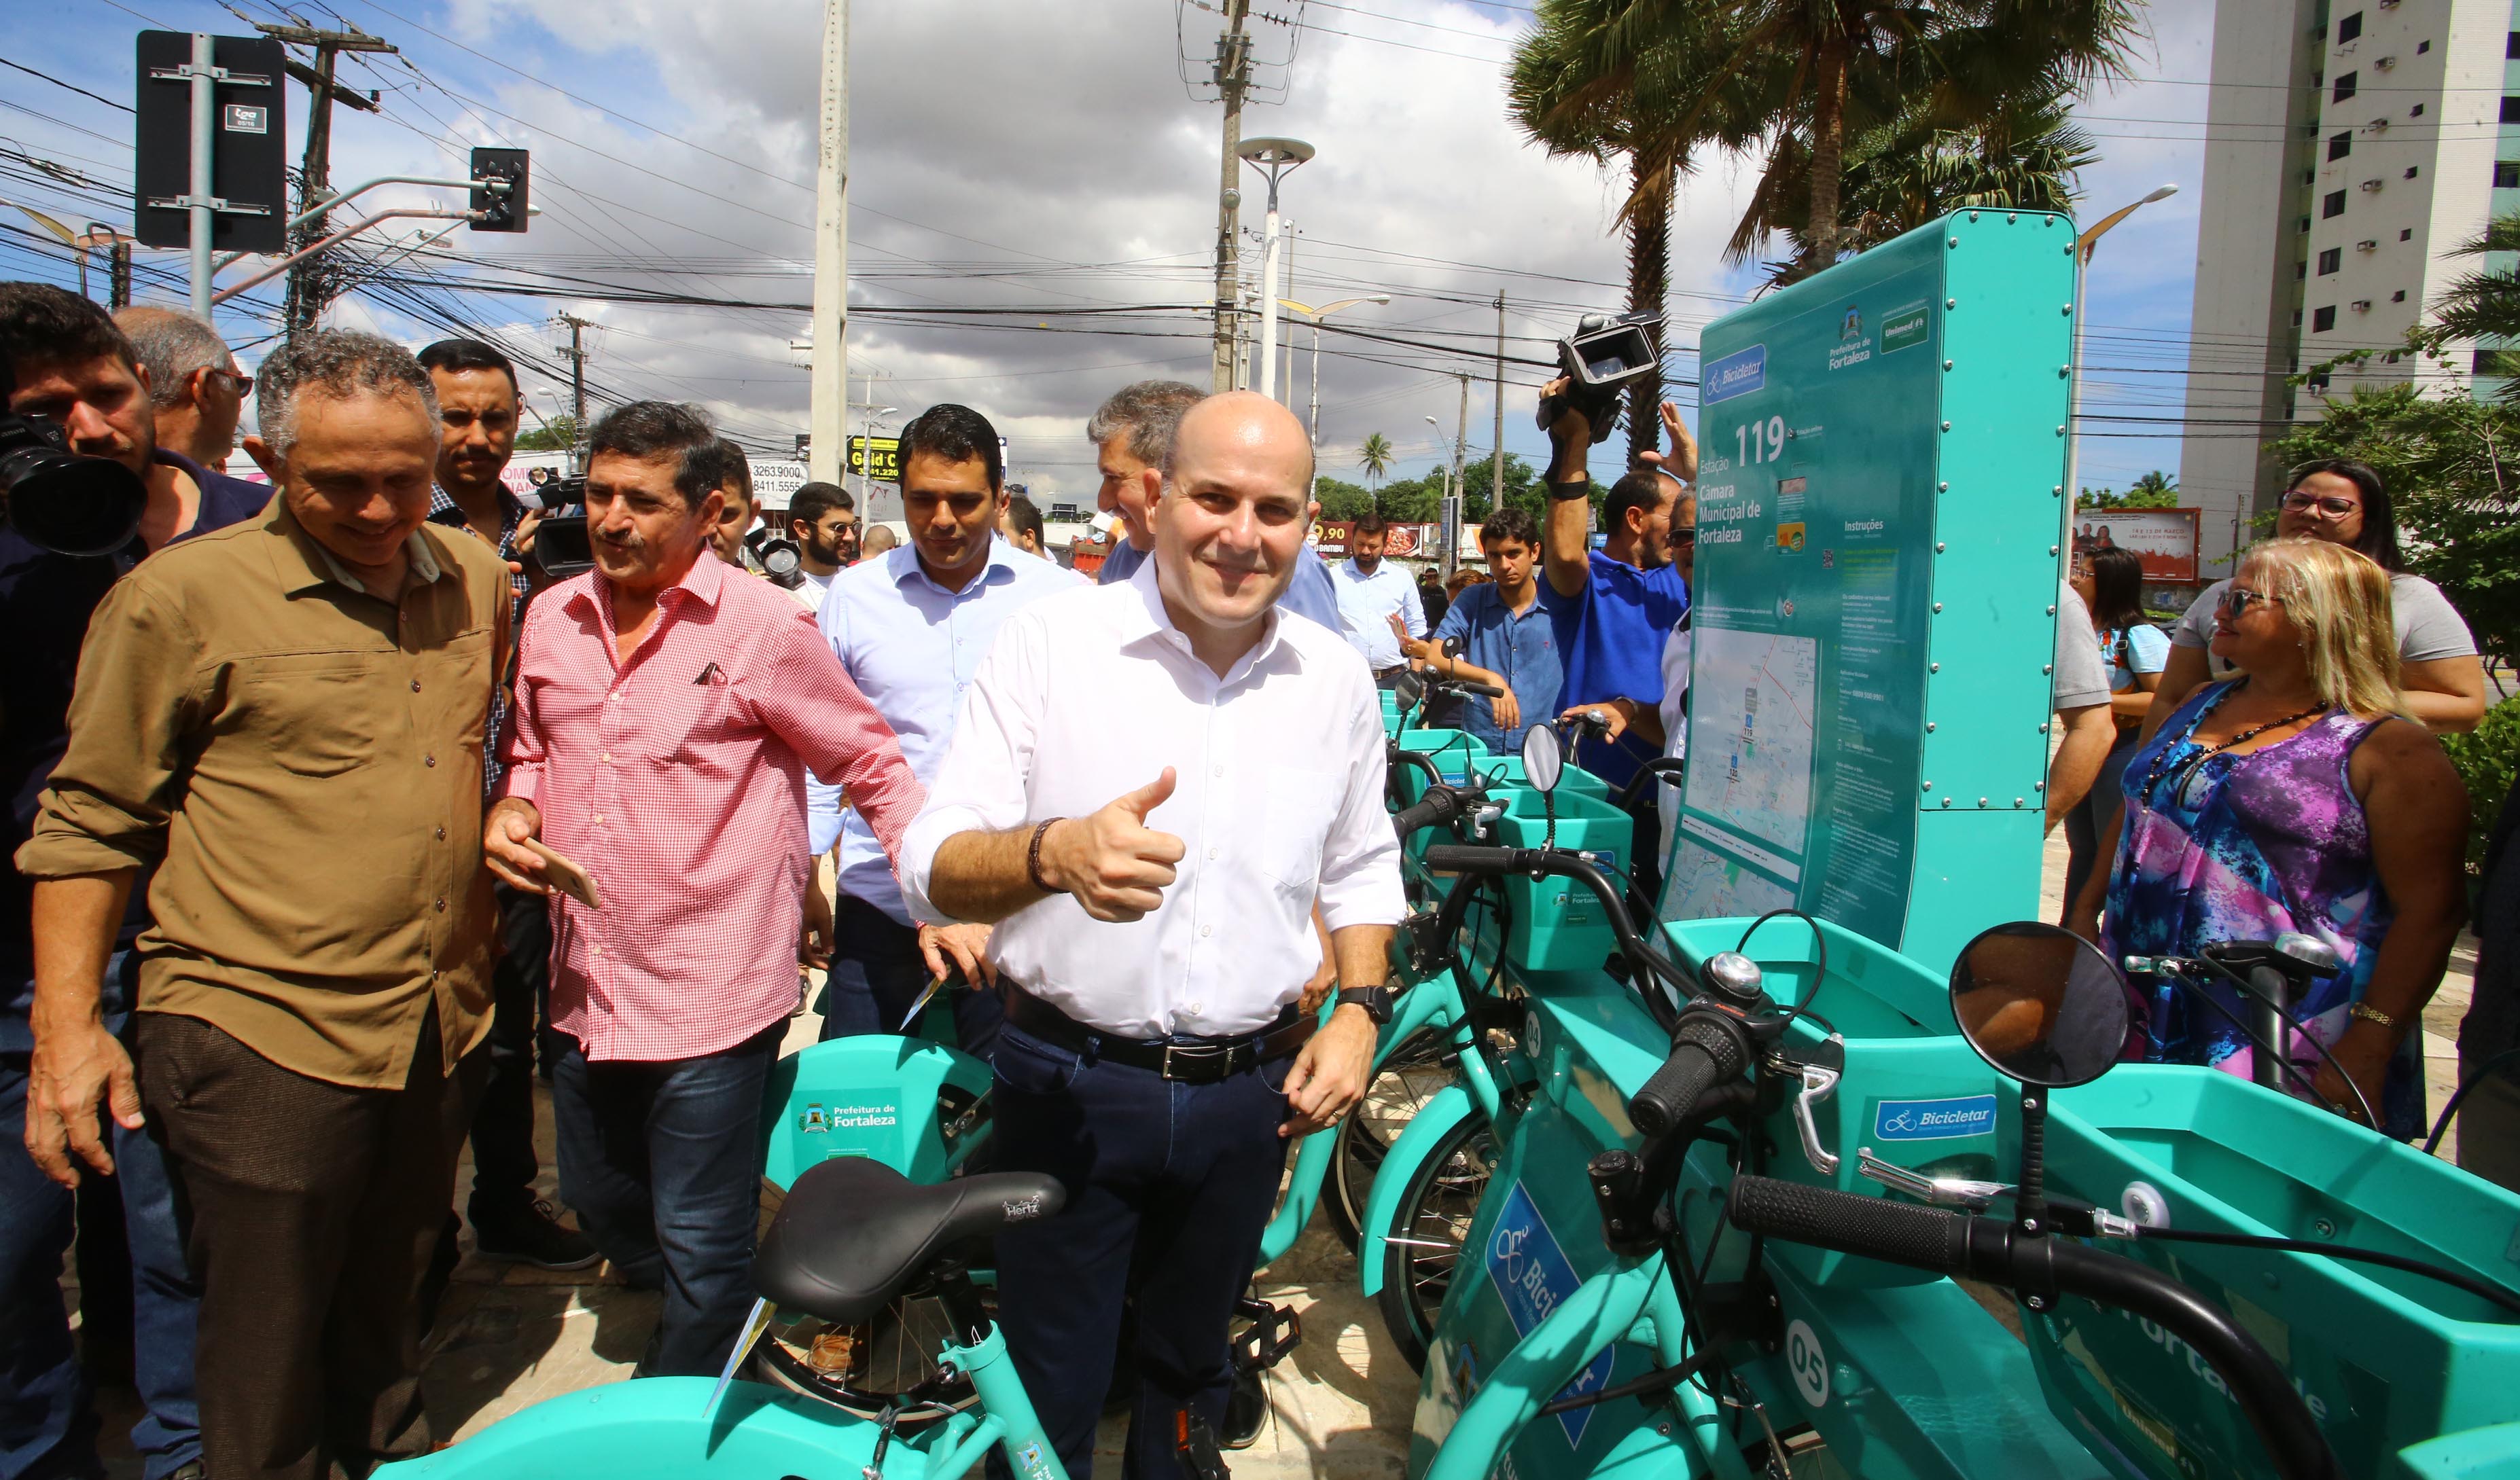 prefeito fazendo sinal de positivo e sorrindo para foto ao lado de pessoas e bicicletas